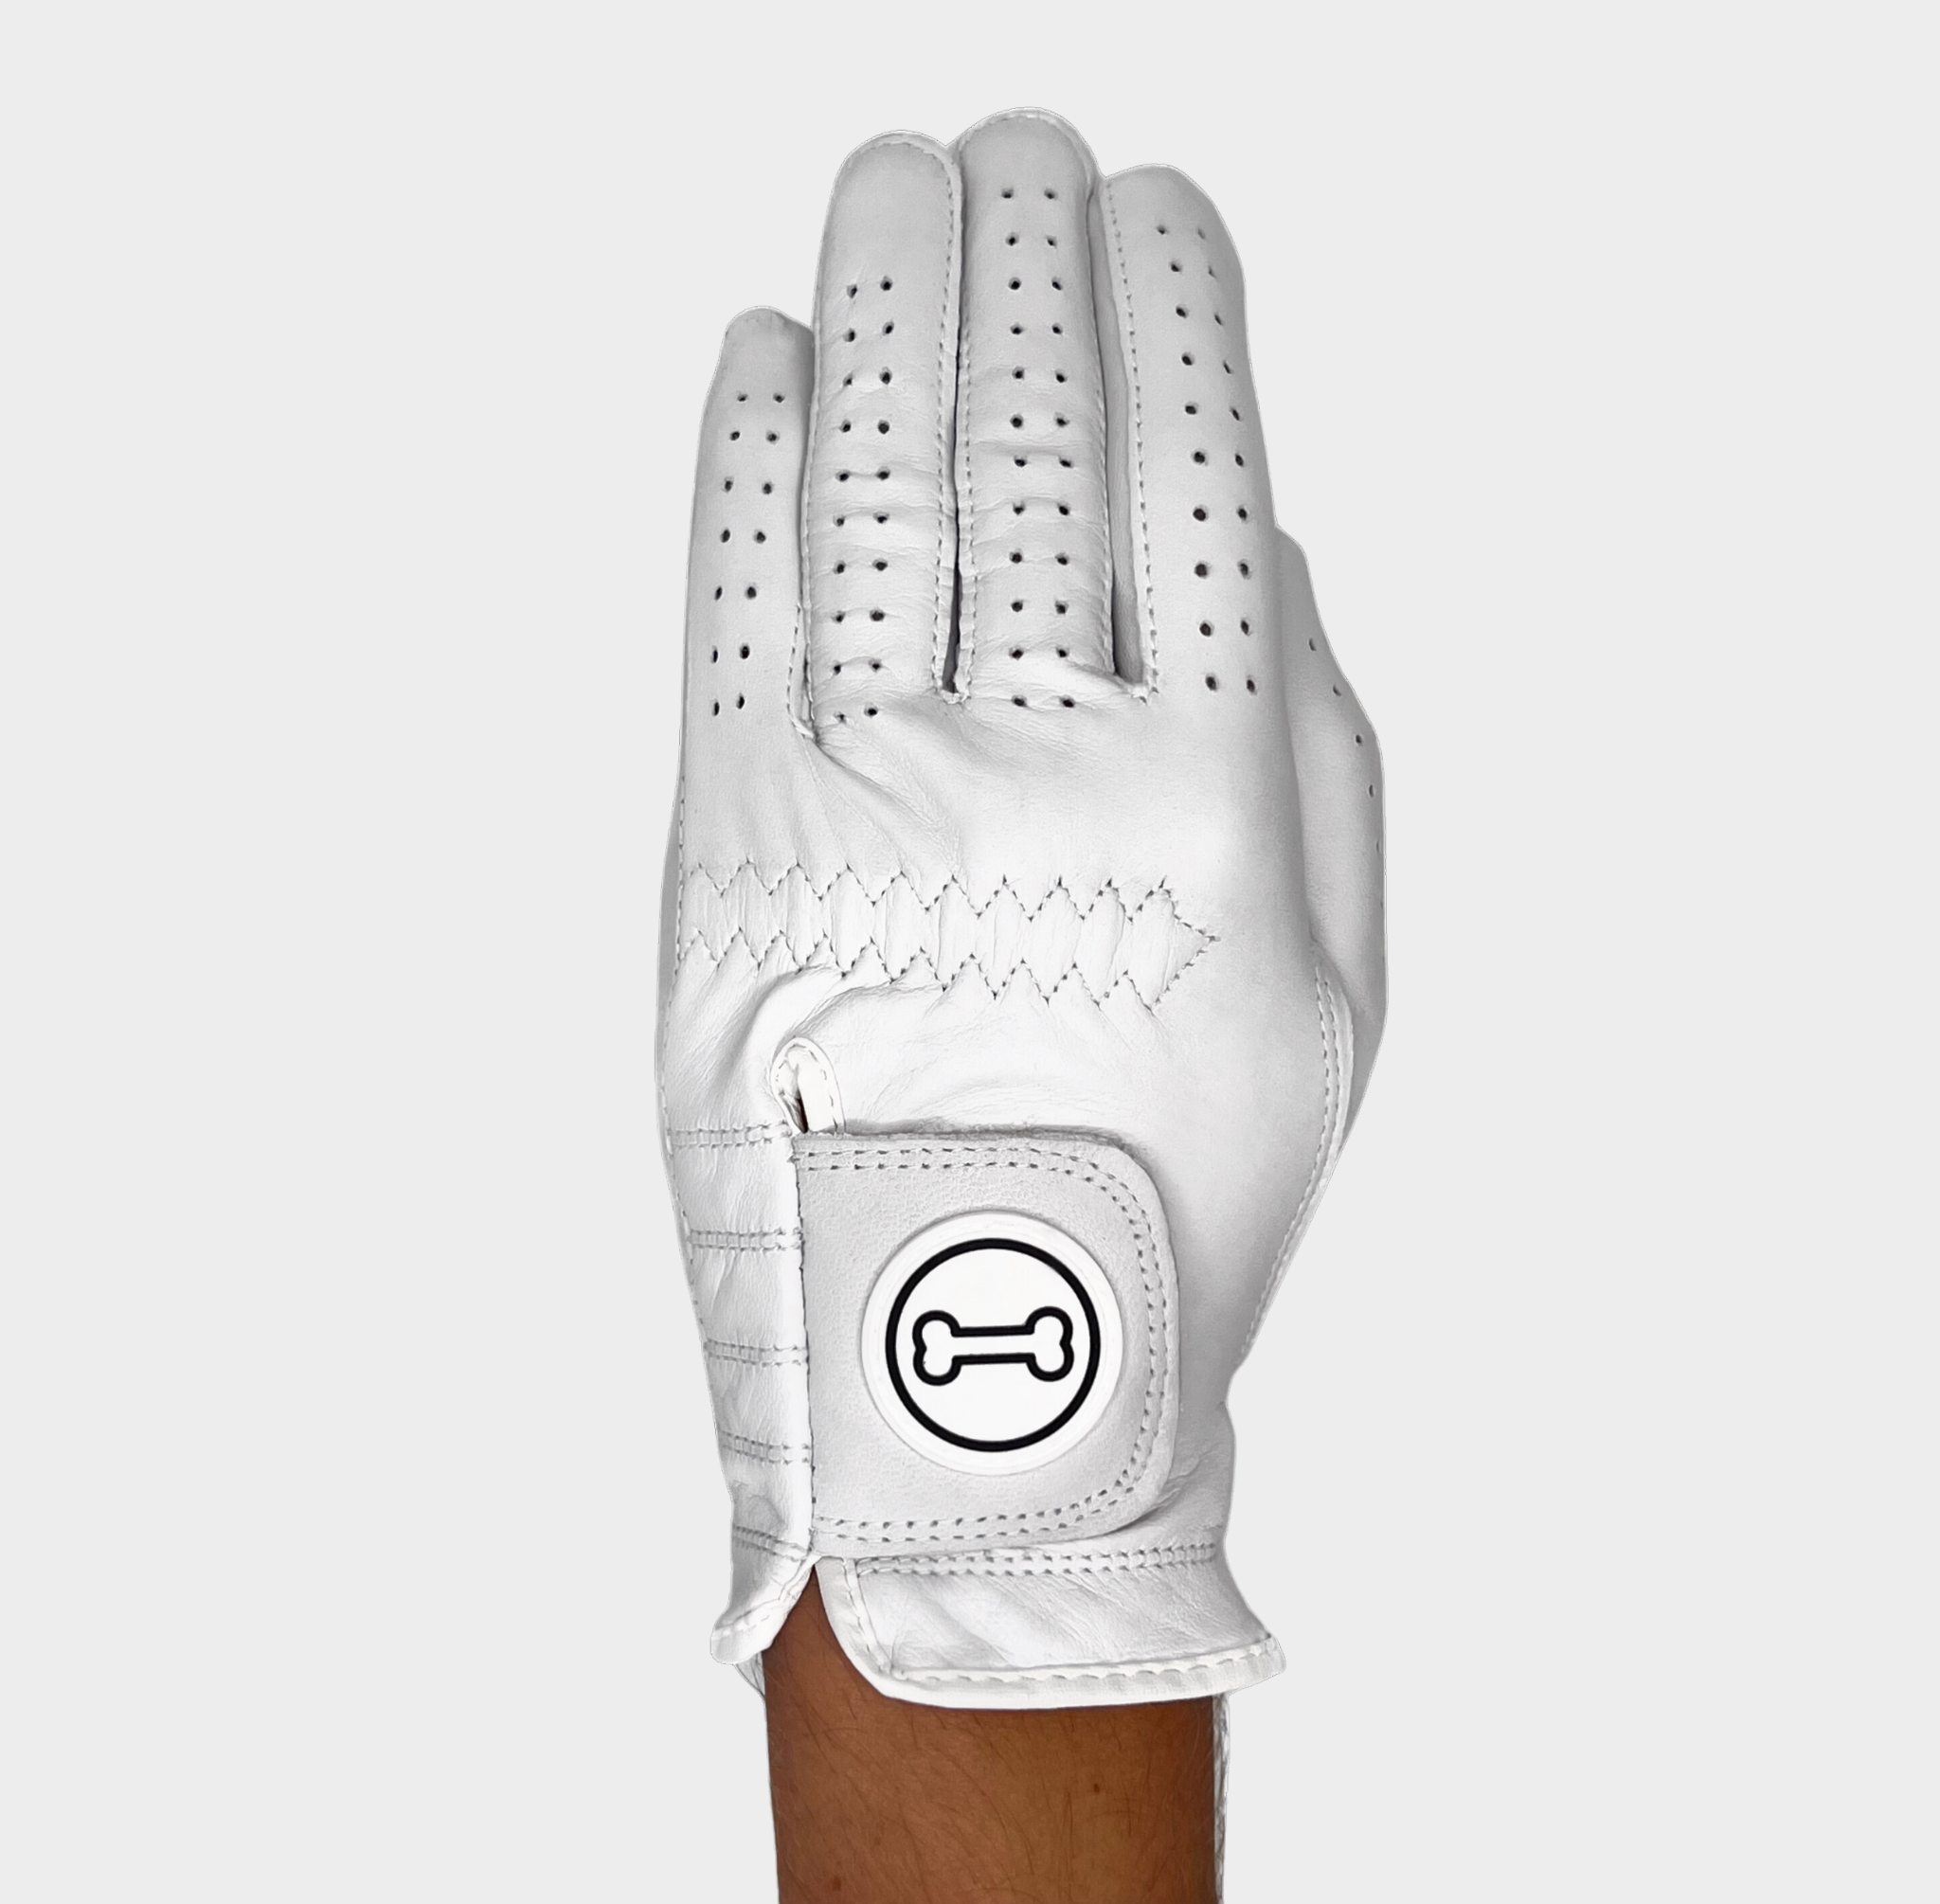 Dogleg left - Men's White Glove